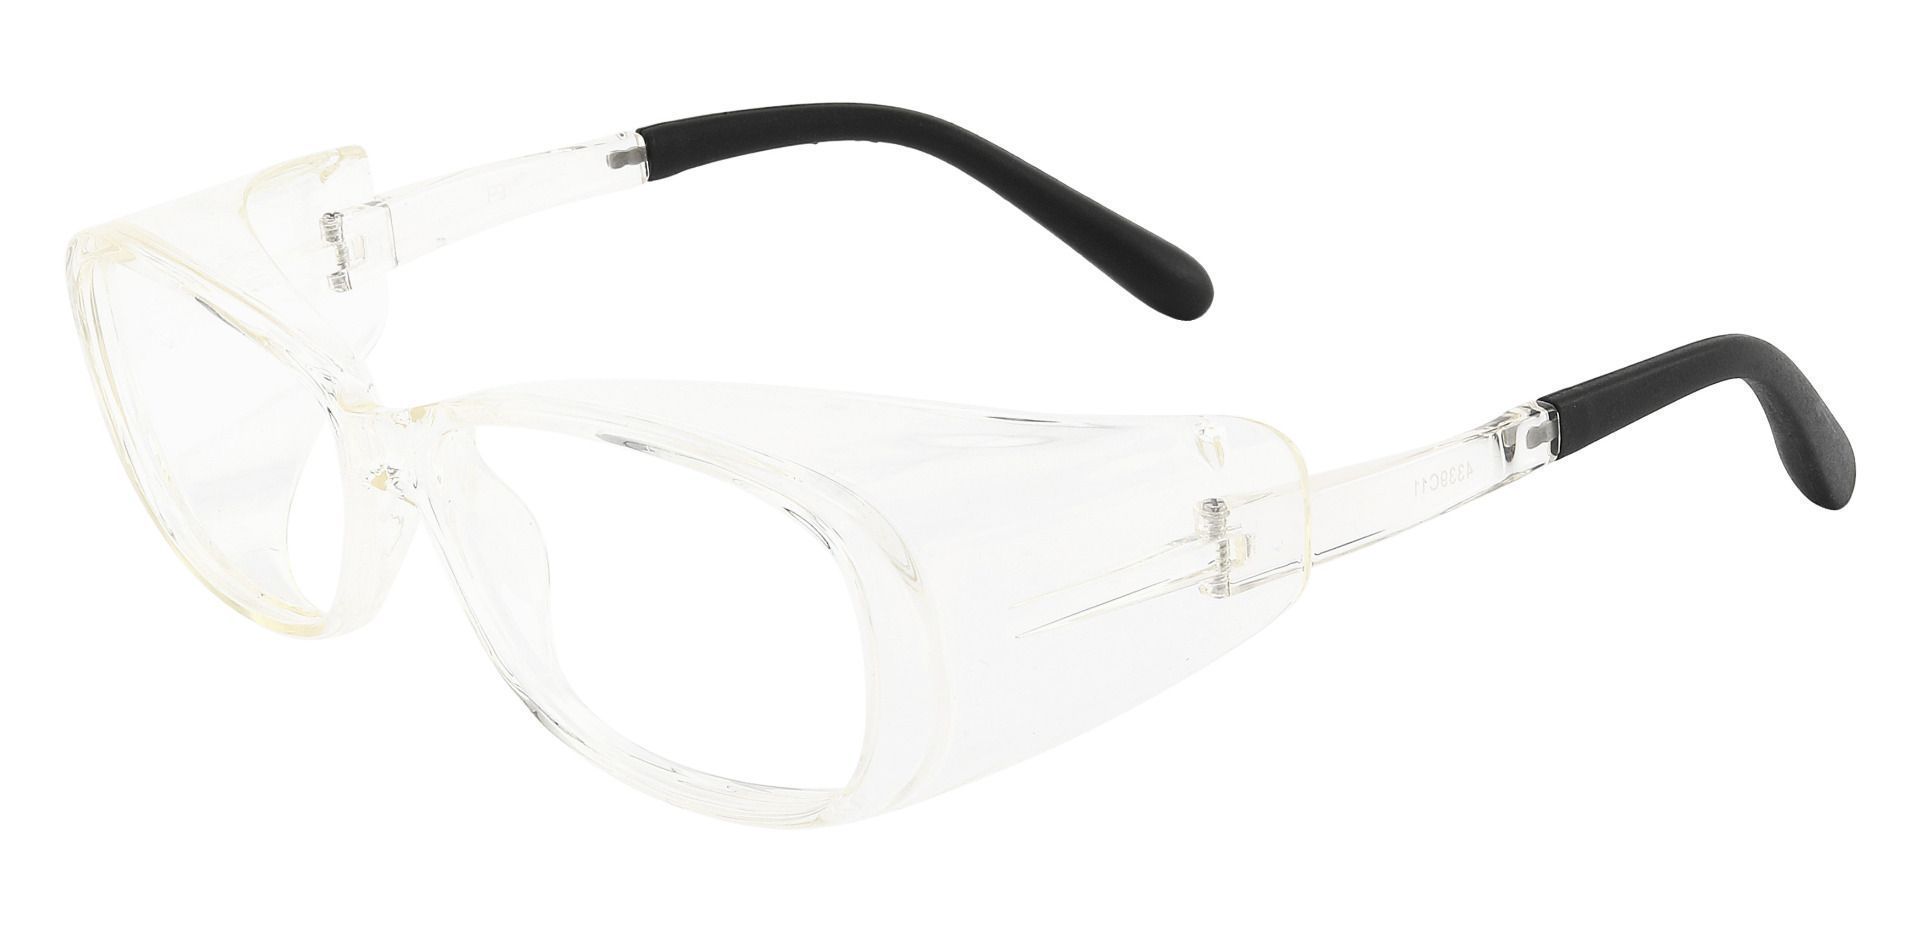 Rosario Sports Goggles Prescription Glasses - Clear